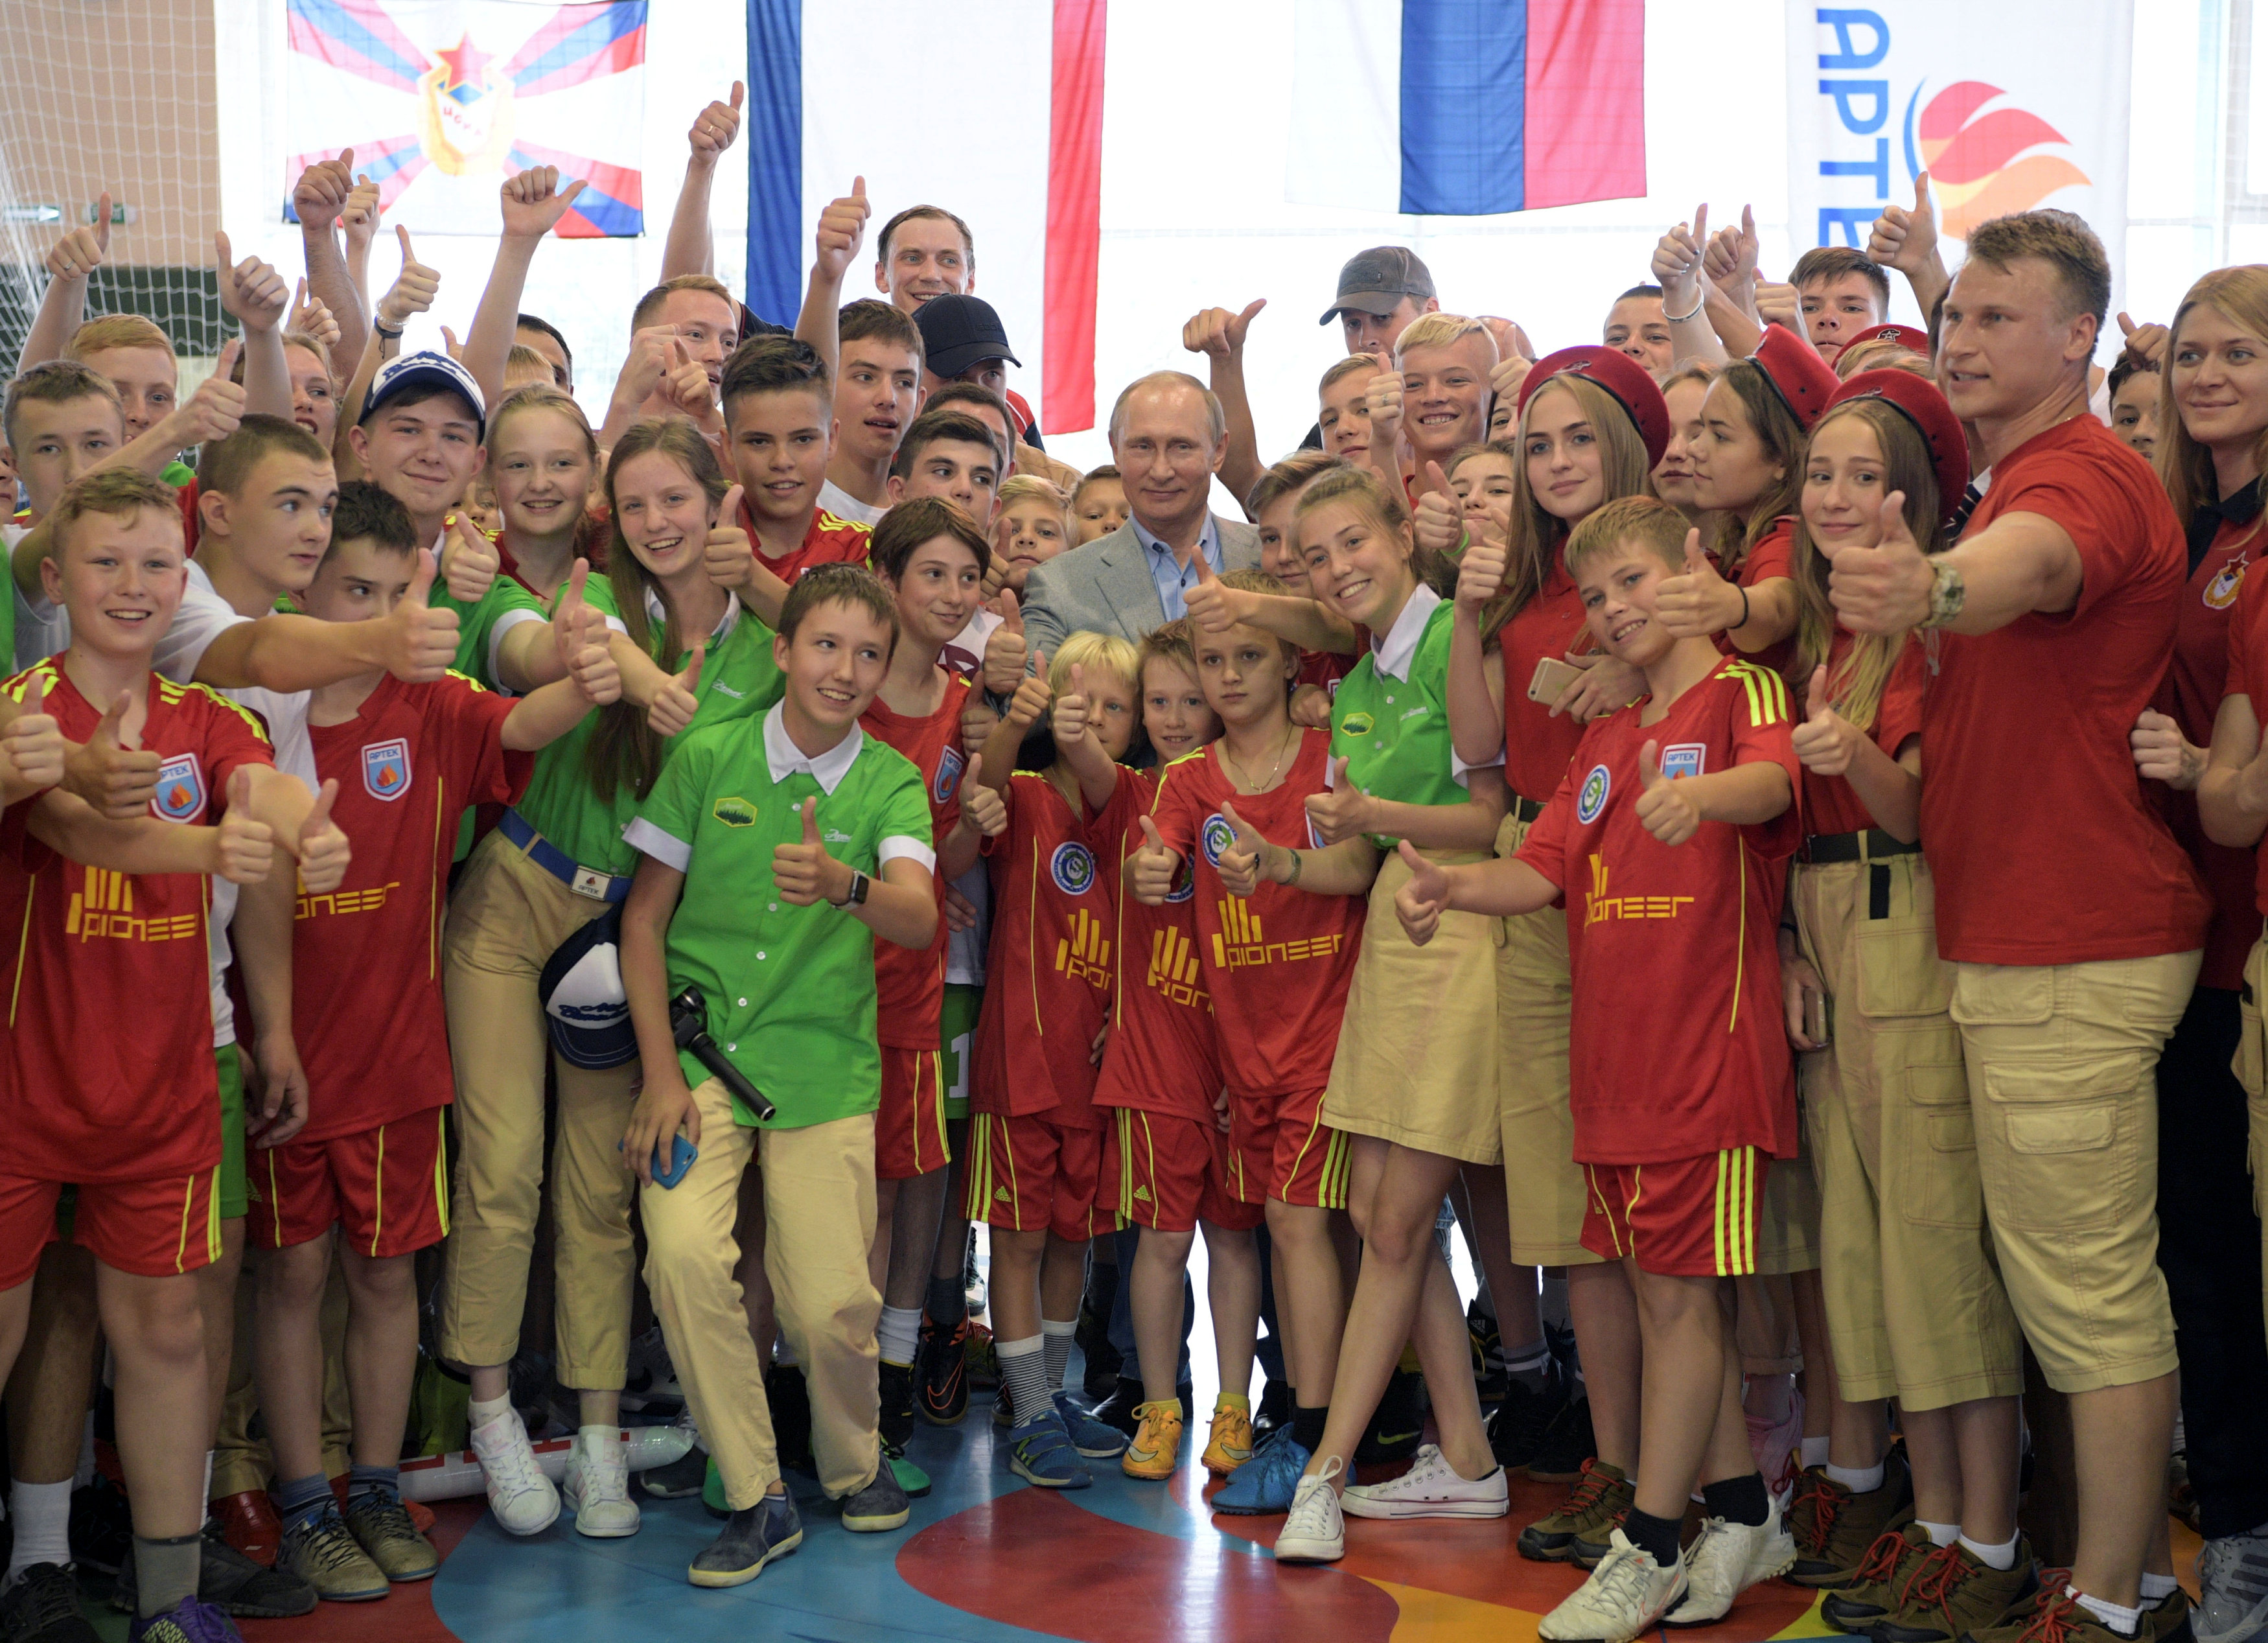 بوتين يلتقط صورة تذكارية مع الأطفال فى مخيم ارتيك